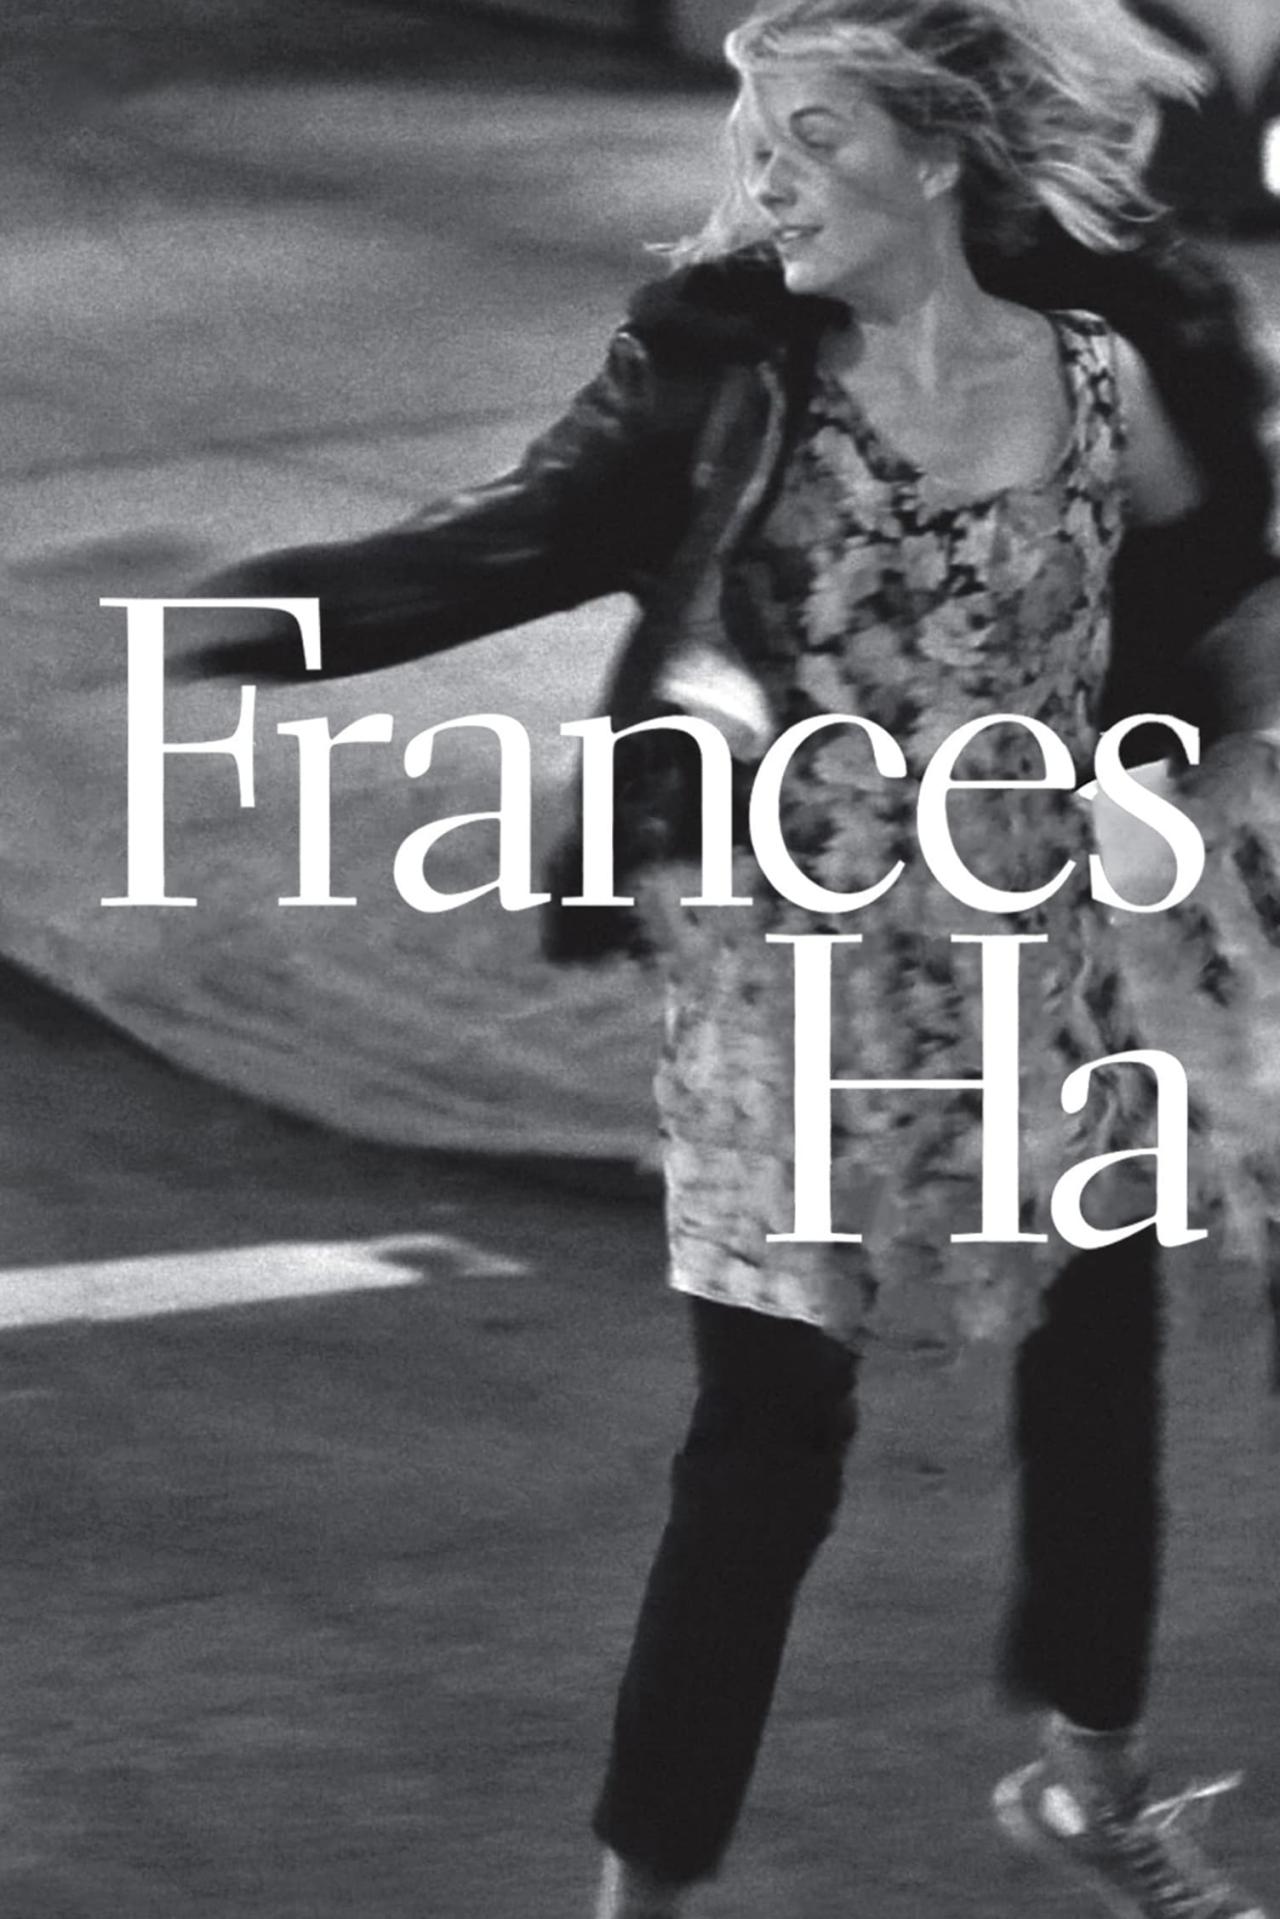 Affiche du film Frances Ha